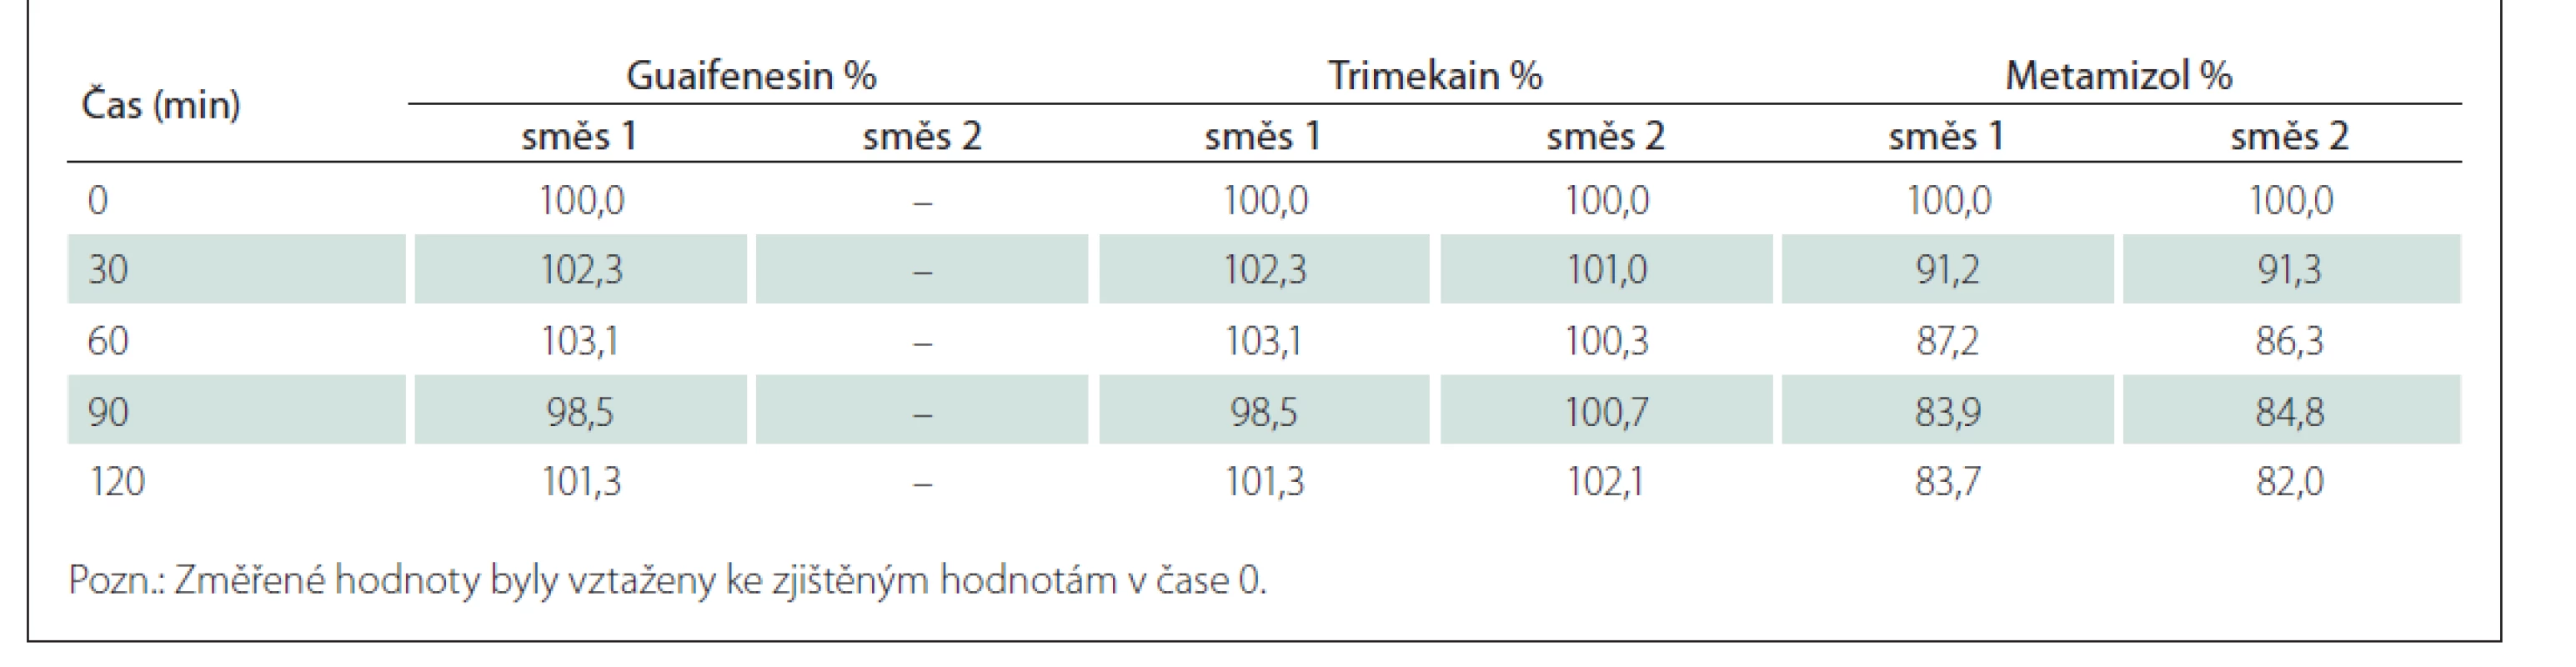 Průměrný relativní obsah sledovaných účinných látek ve směsích analgeticko-myorelaxačních infuzí č. 1 a č. 2.